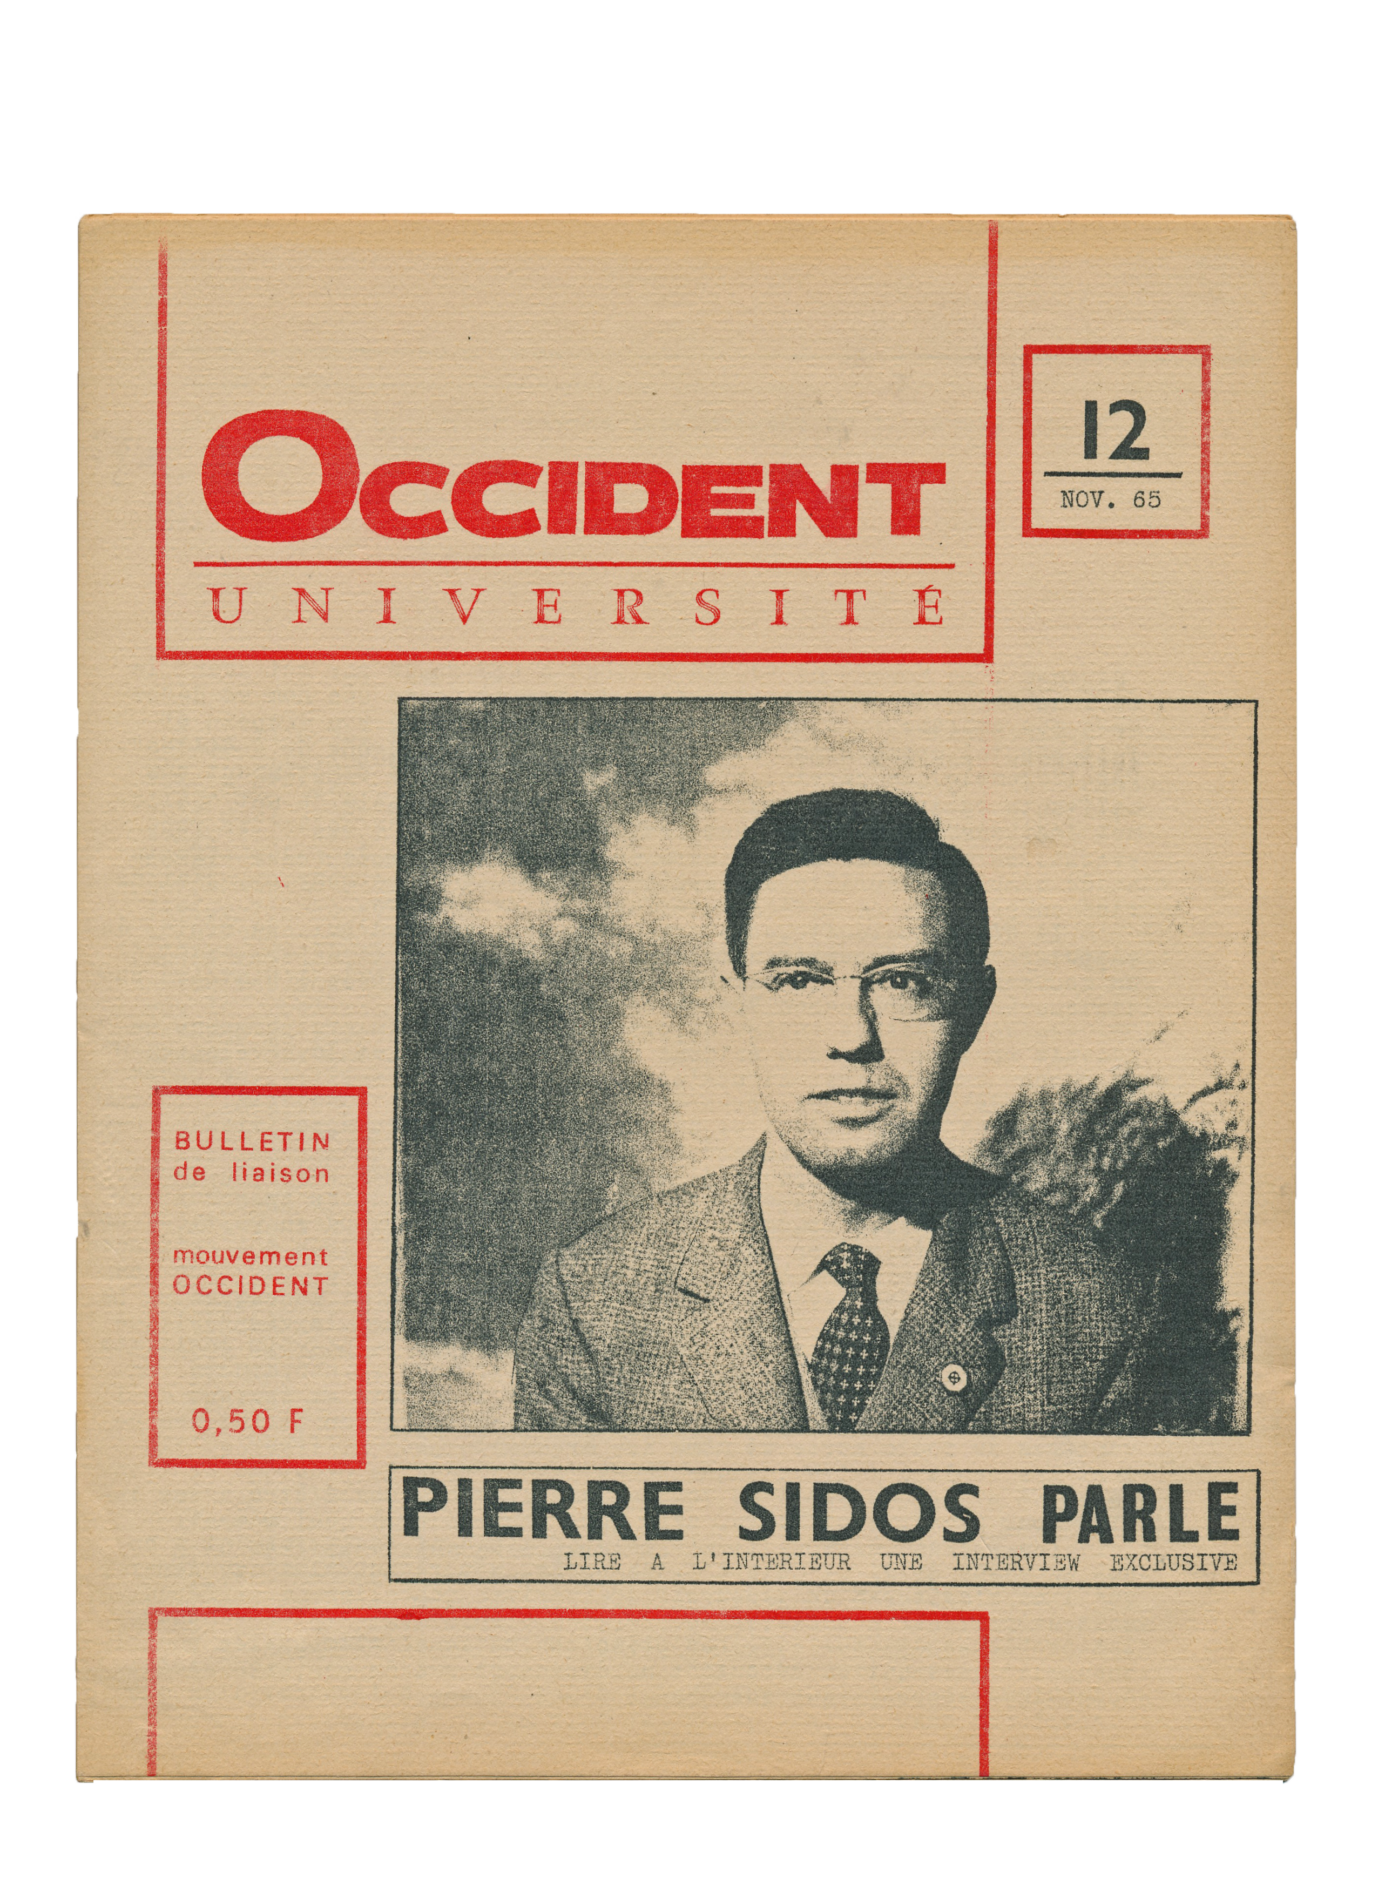 Ausgabe von Occident-Université mit dem Bild Sidos', 1965